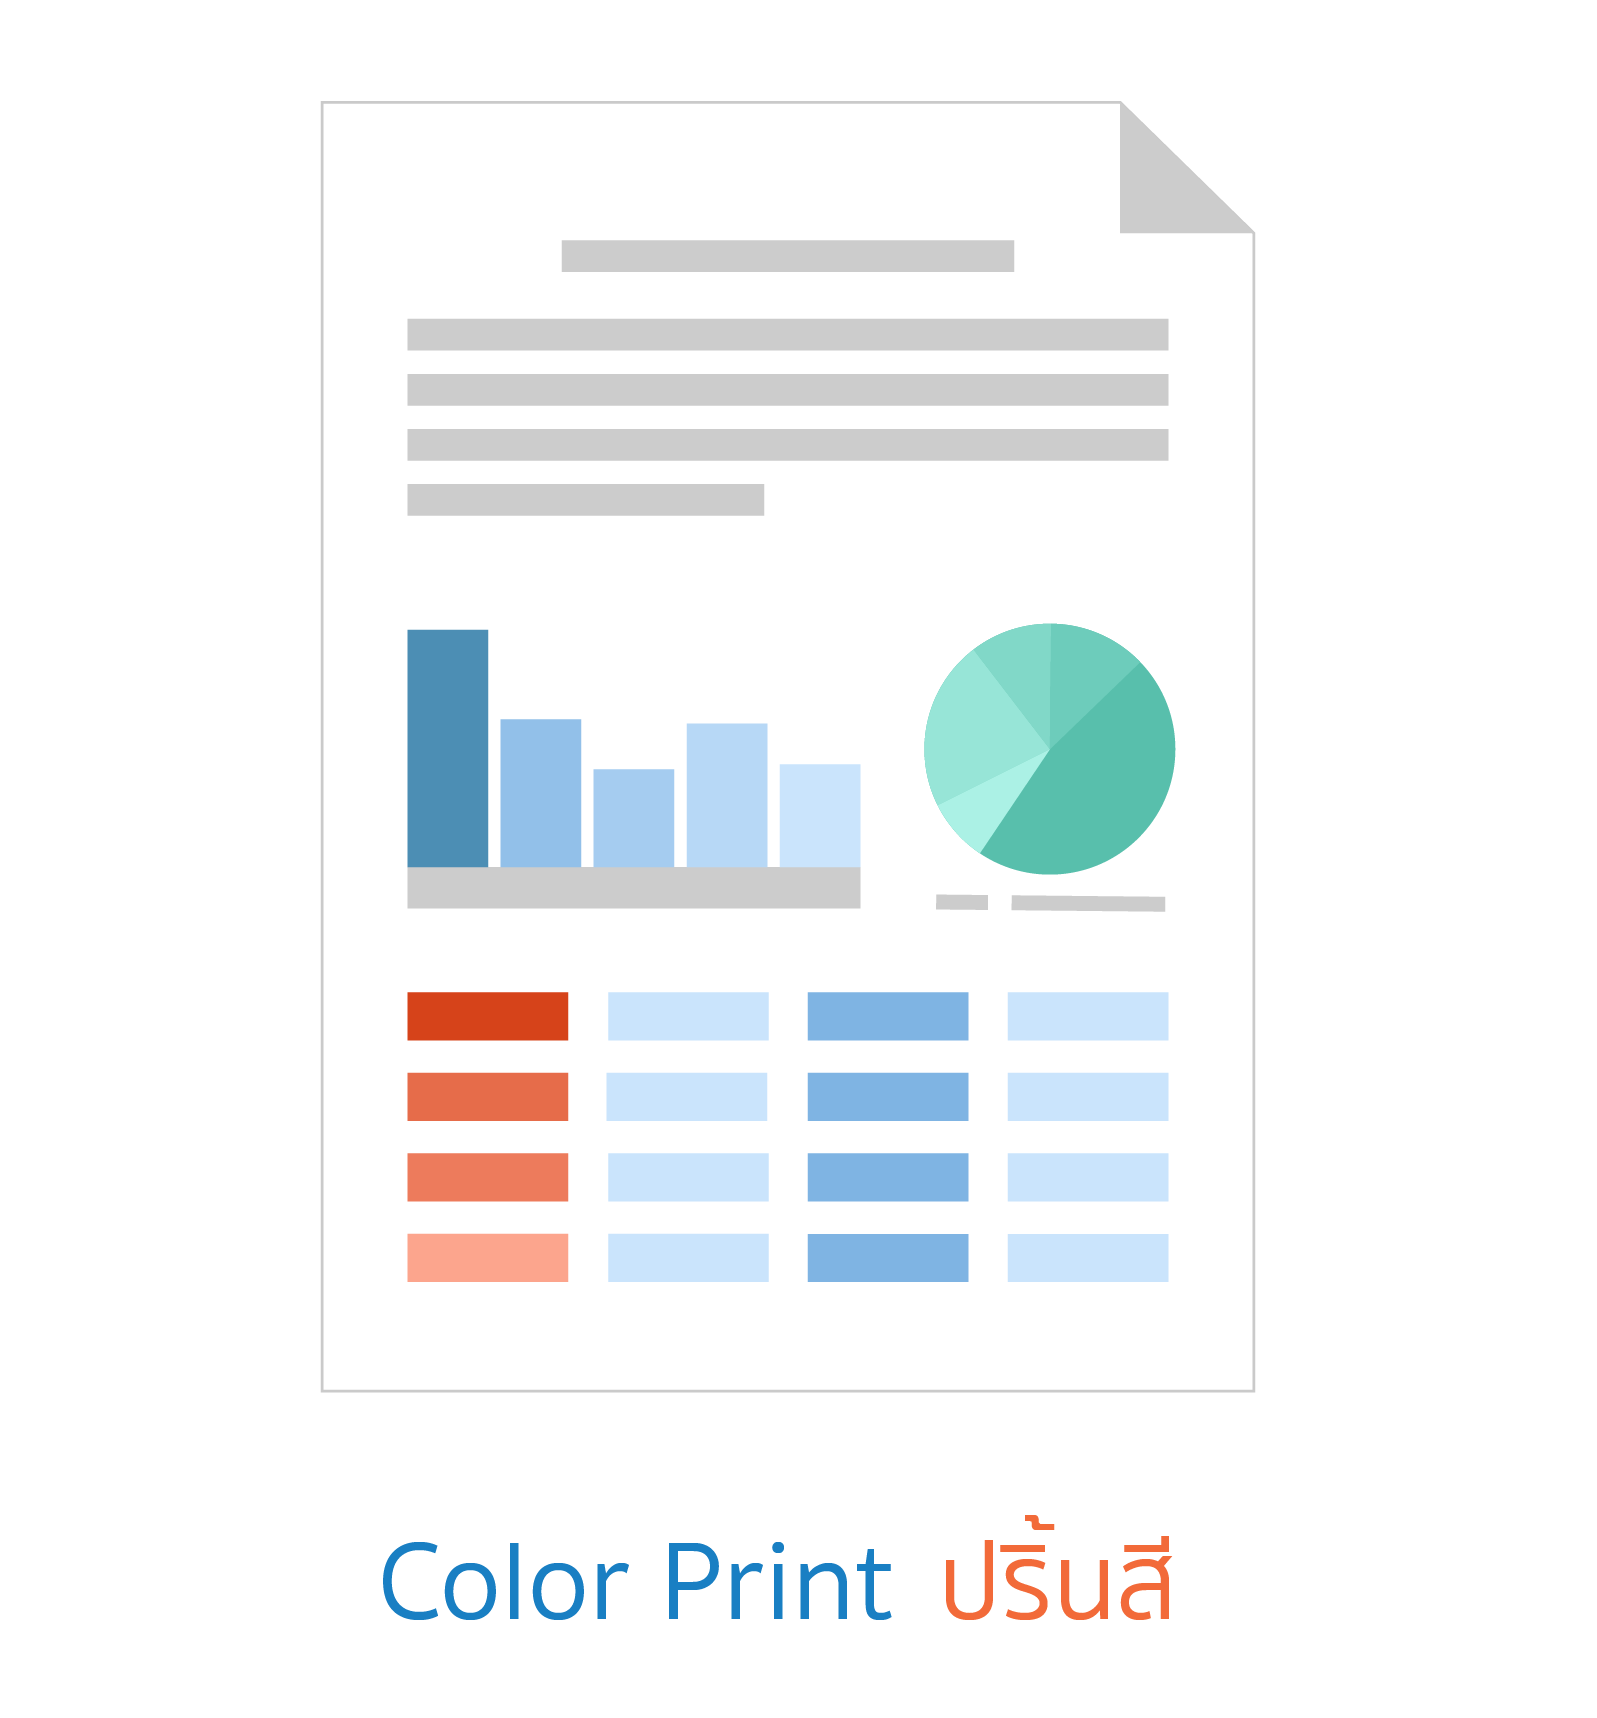 Print Color ปริ้นสี บริการ ปริ้นเอกสารออนไลน์